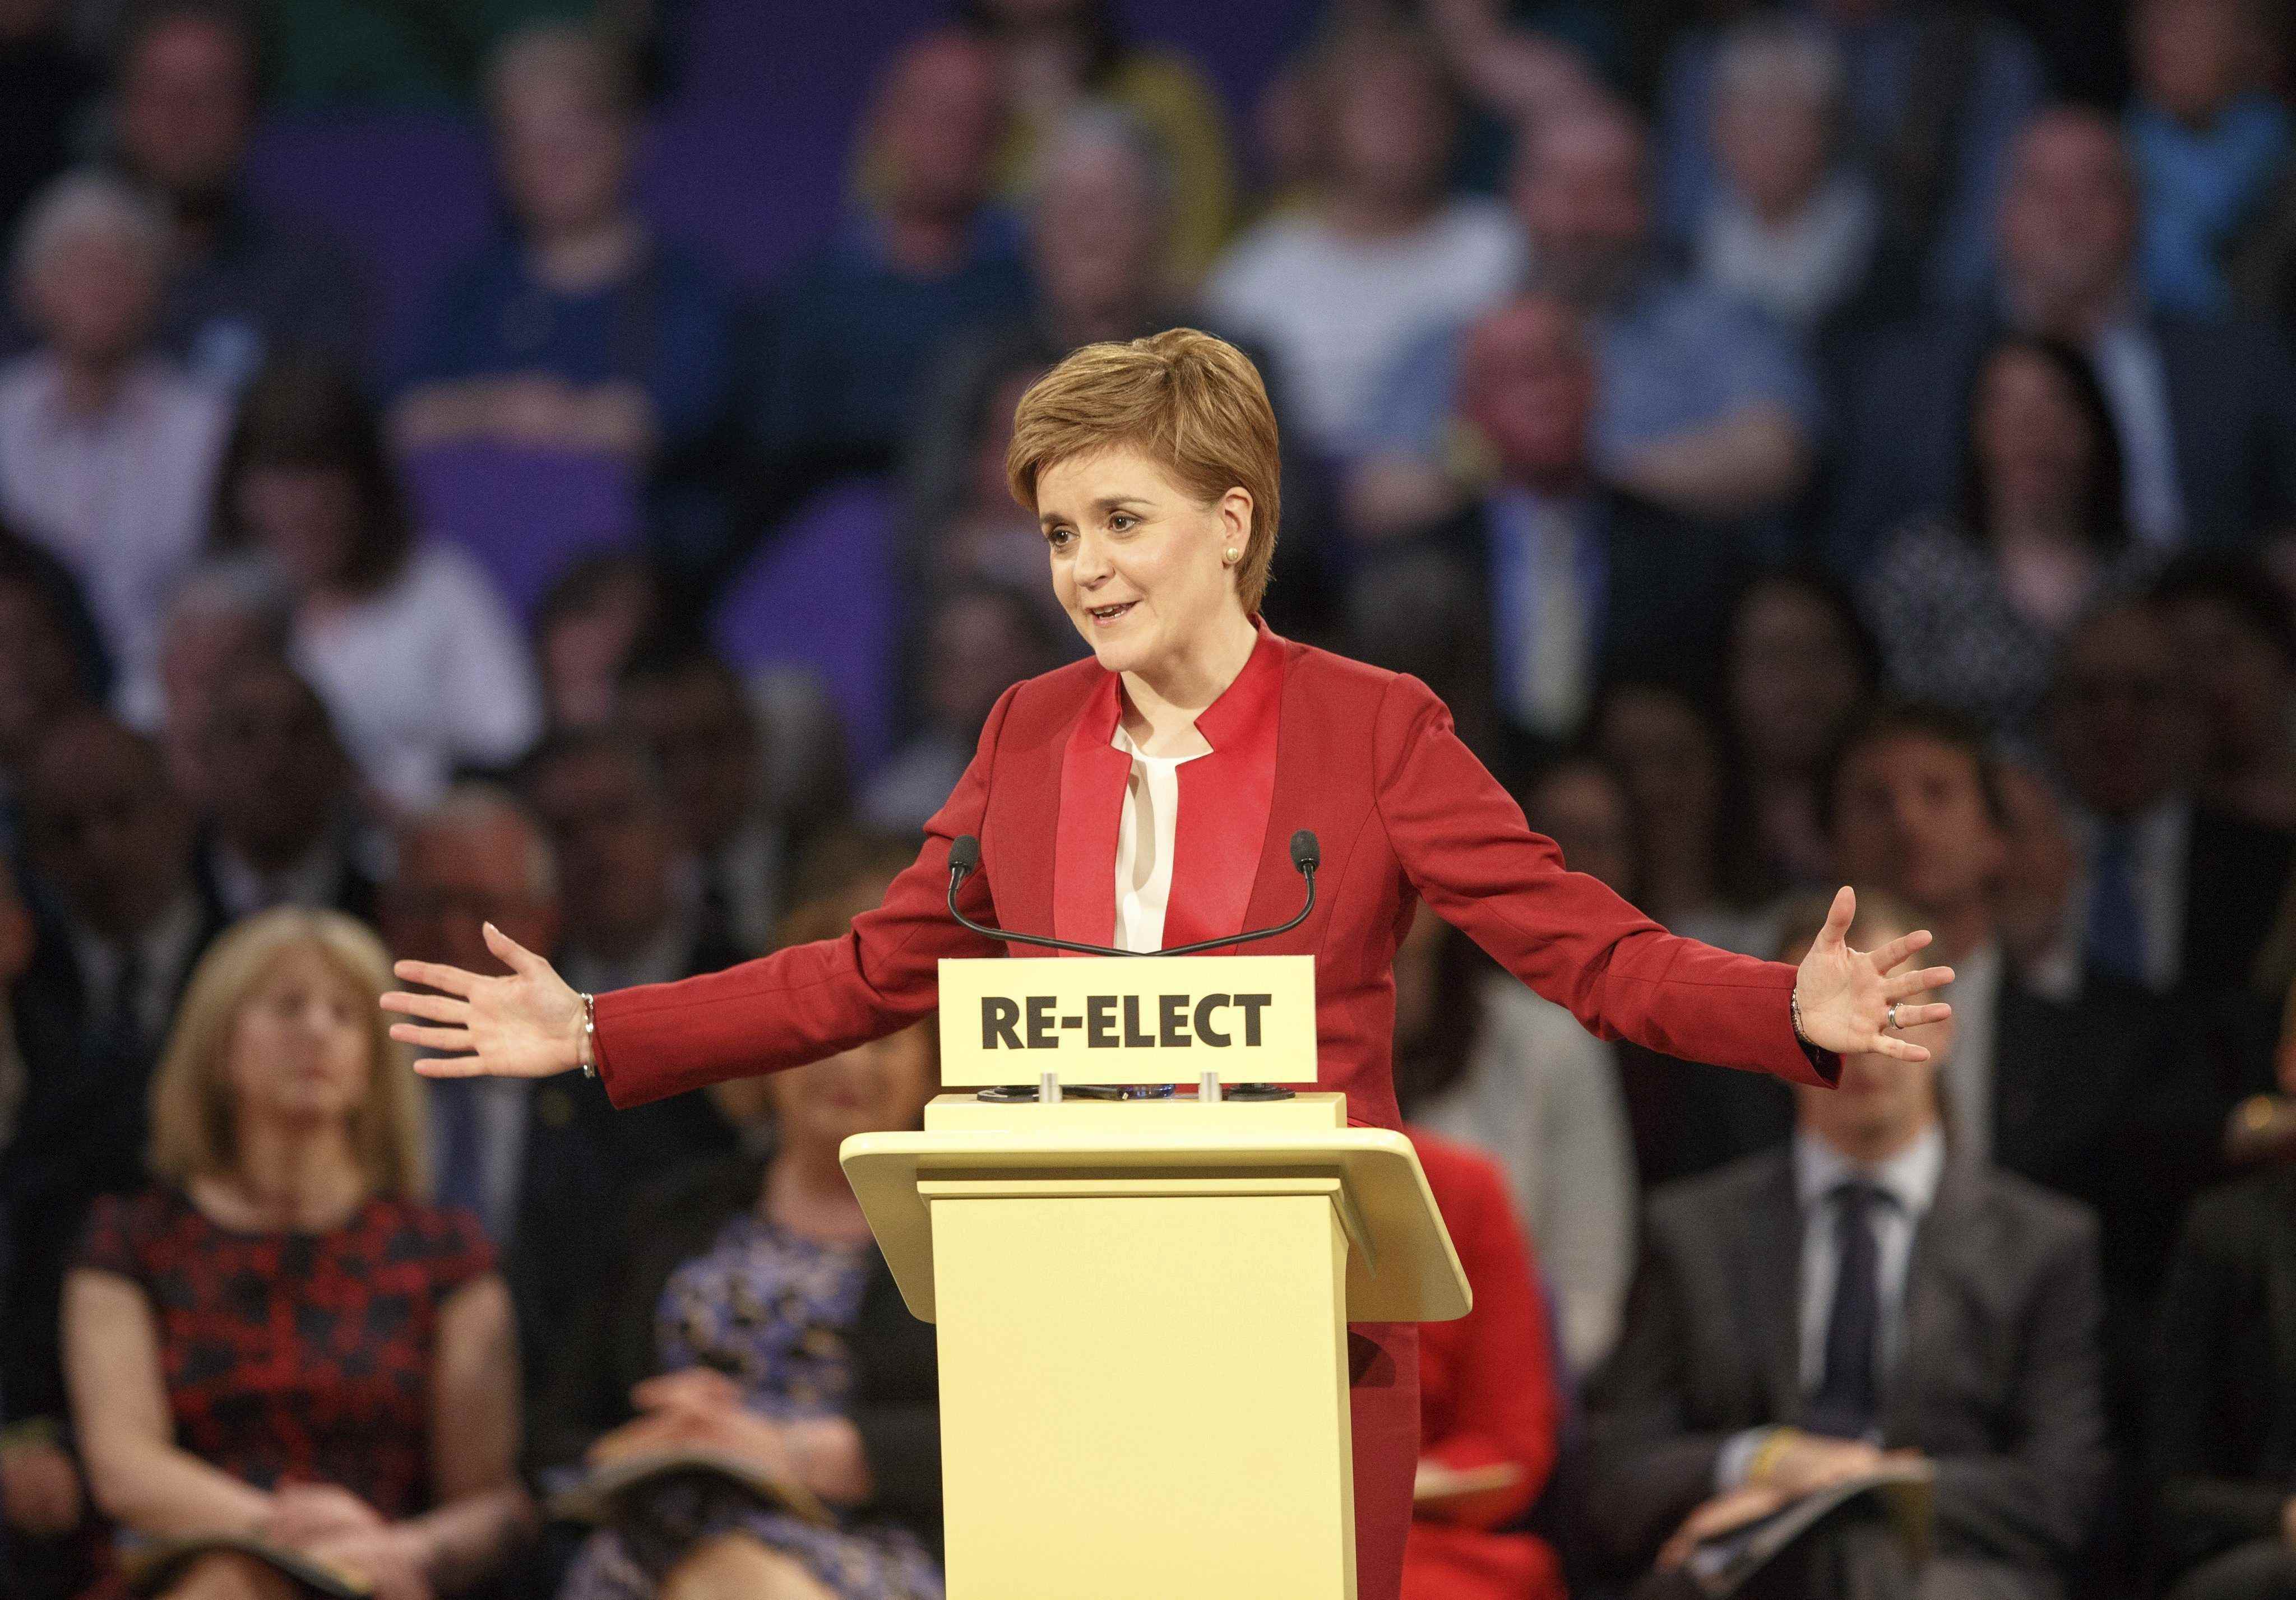 Les últimes enquestes apunten majoria absoluta de Sturgeon a Escòcia